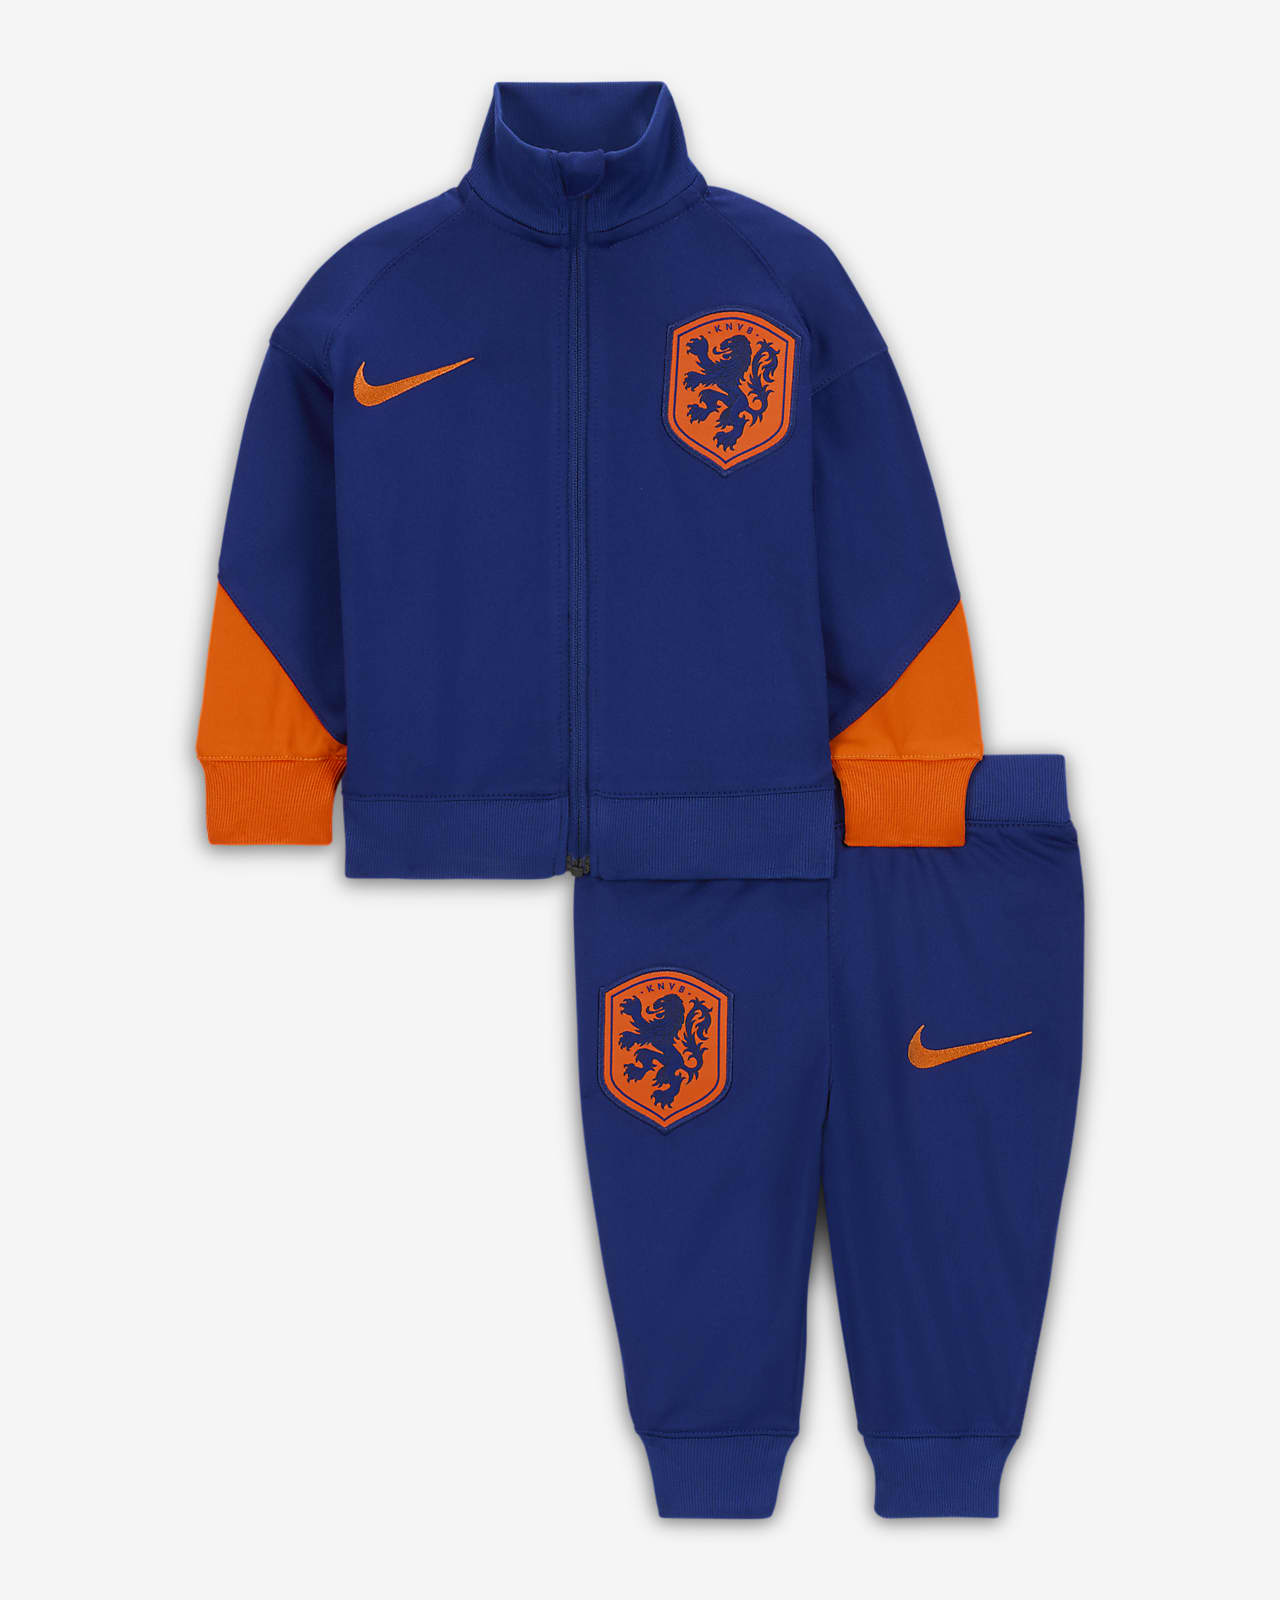 Nederland Strike Nike Dri-FIT strikket fotballtracksuit til sped-/småbarn